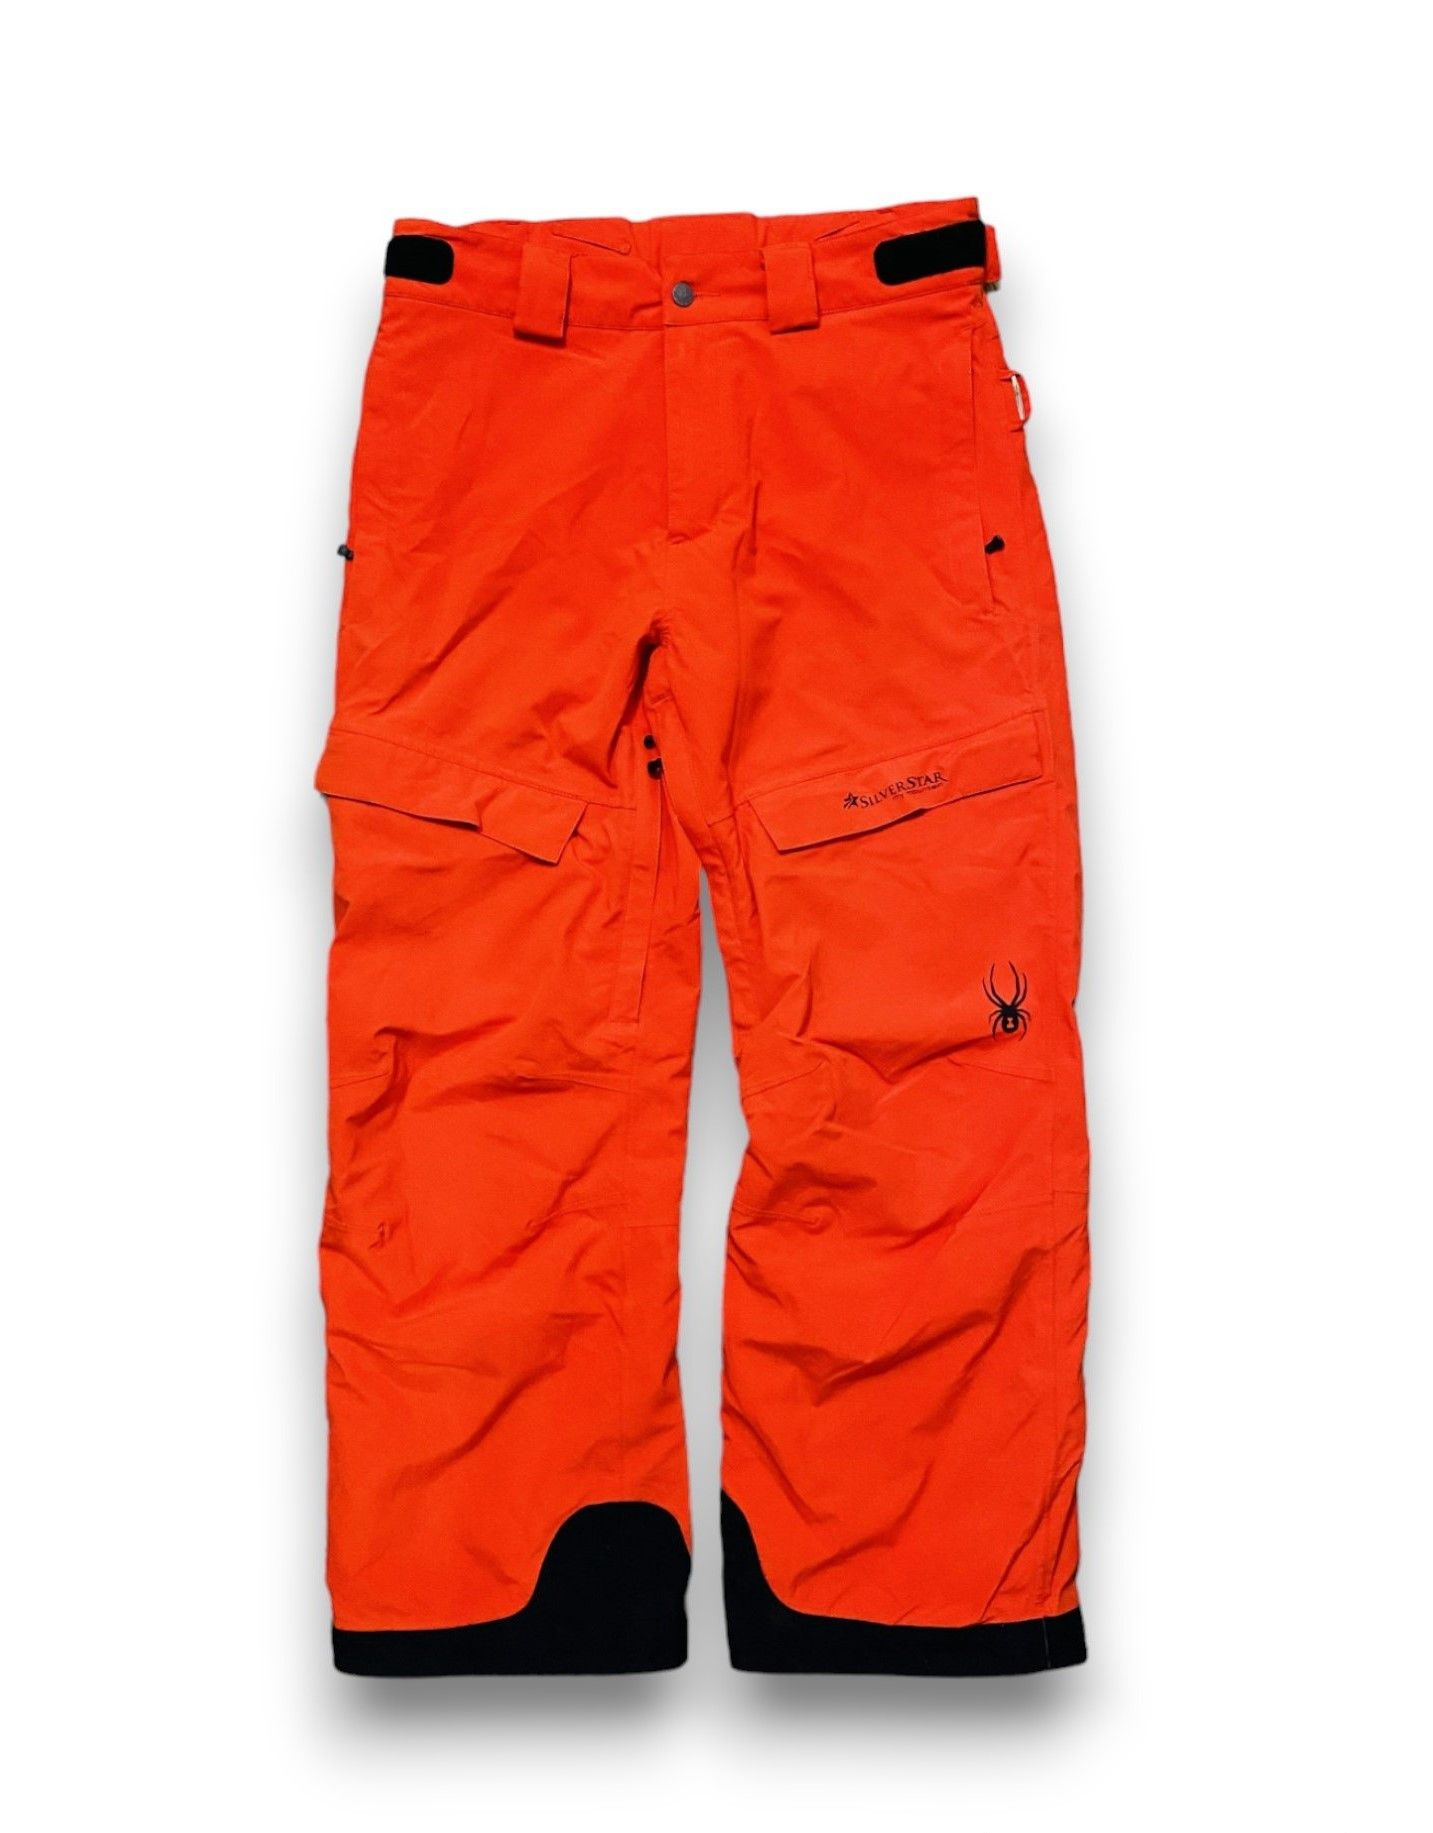 Outdoor Life - Spyder Pants Snowboarding Ski Outdoor Orange Men's M/L - 4